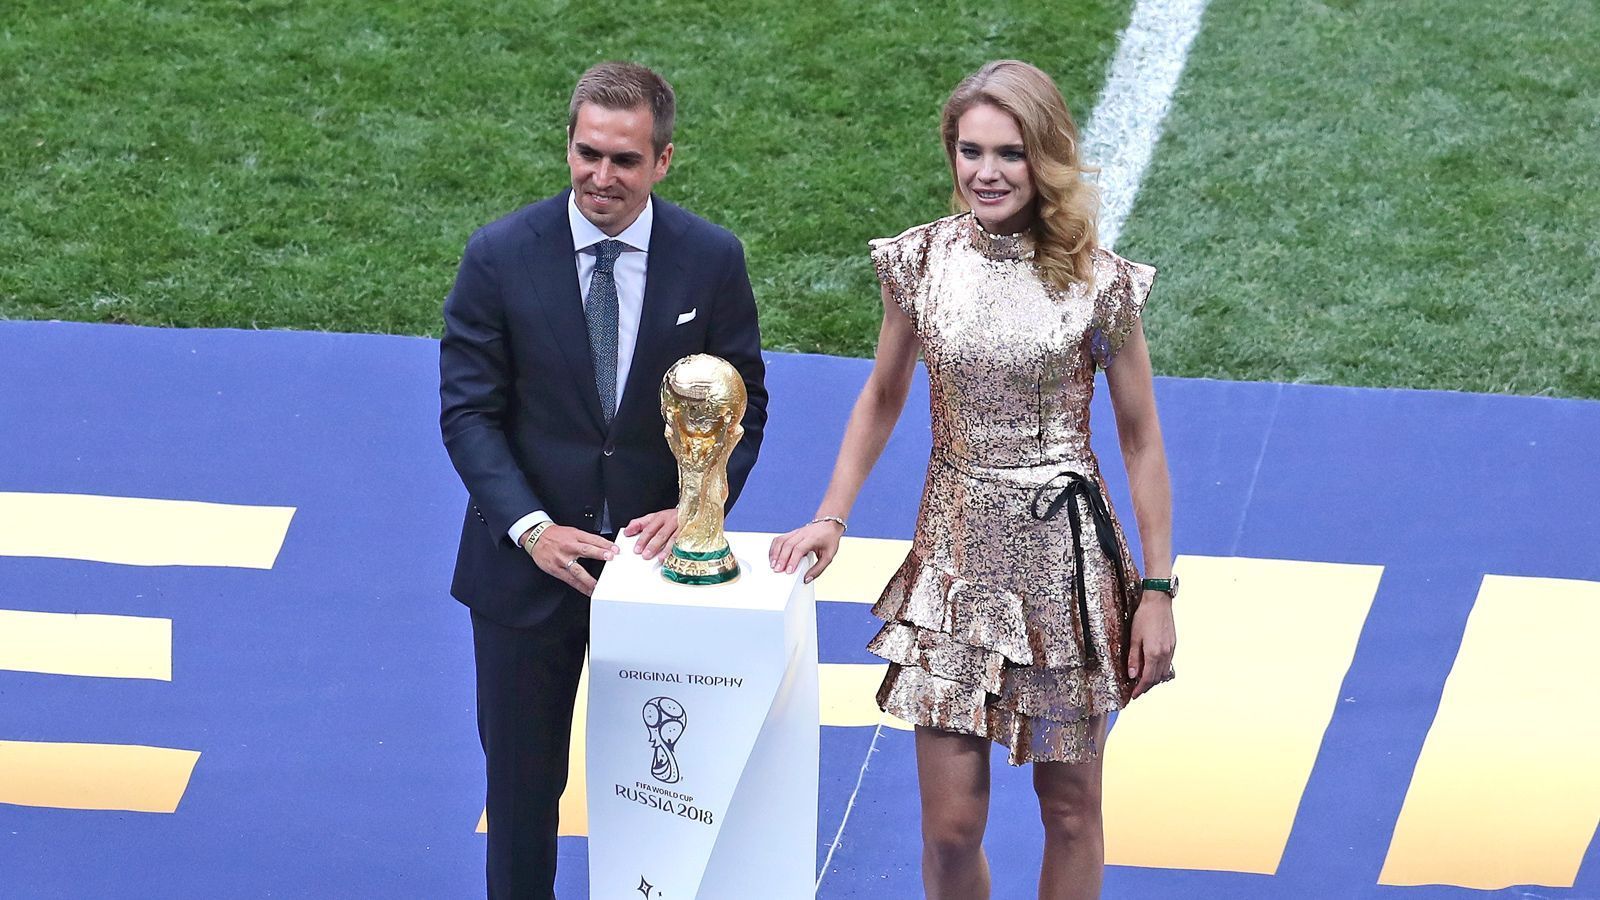 
                <strong>Pokalträger Lahm</strong><br>
                Unser Weltmeister-Kapitän Philipp Lahm bringt feierlich den goldenen Pokal ins Stadion - natürlich in Begleitung einer schönen Dame.
              